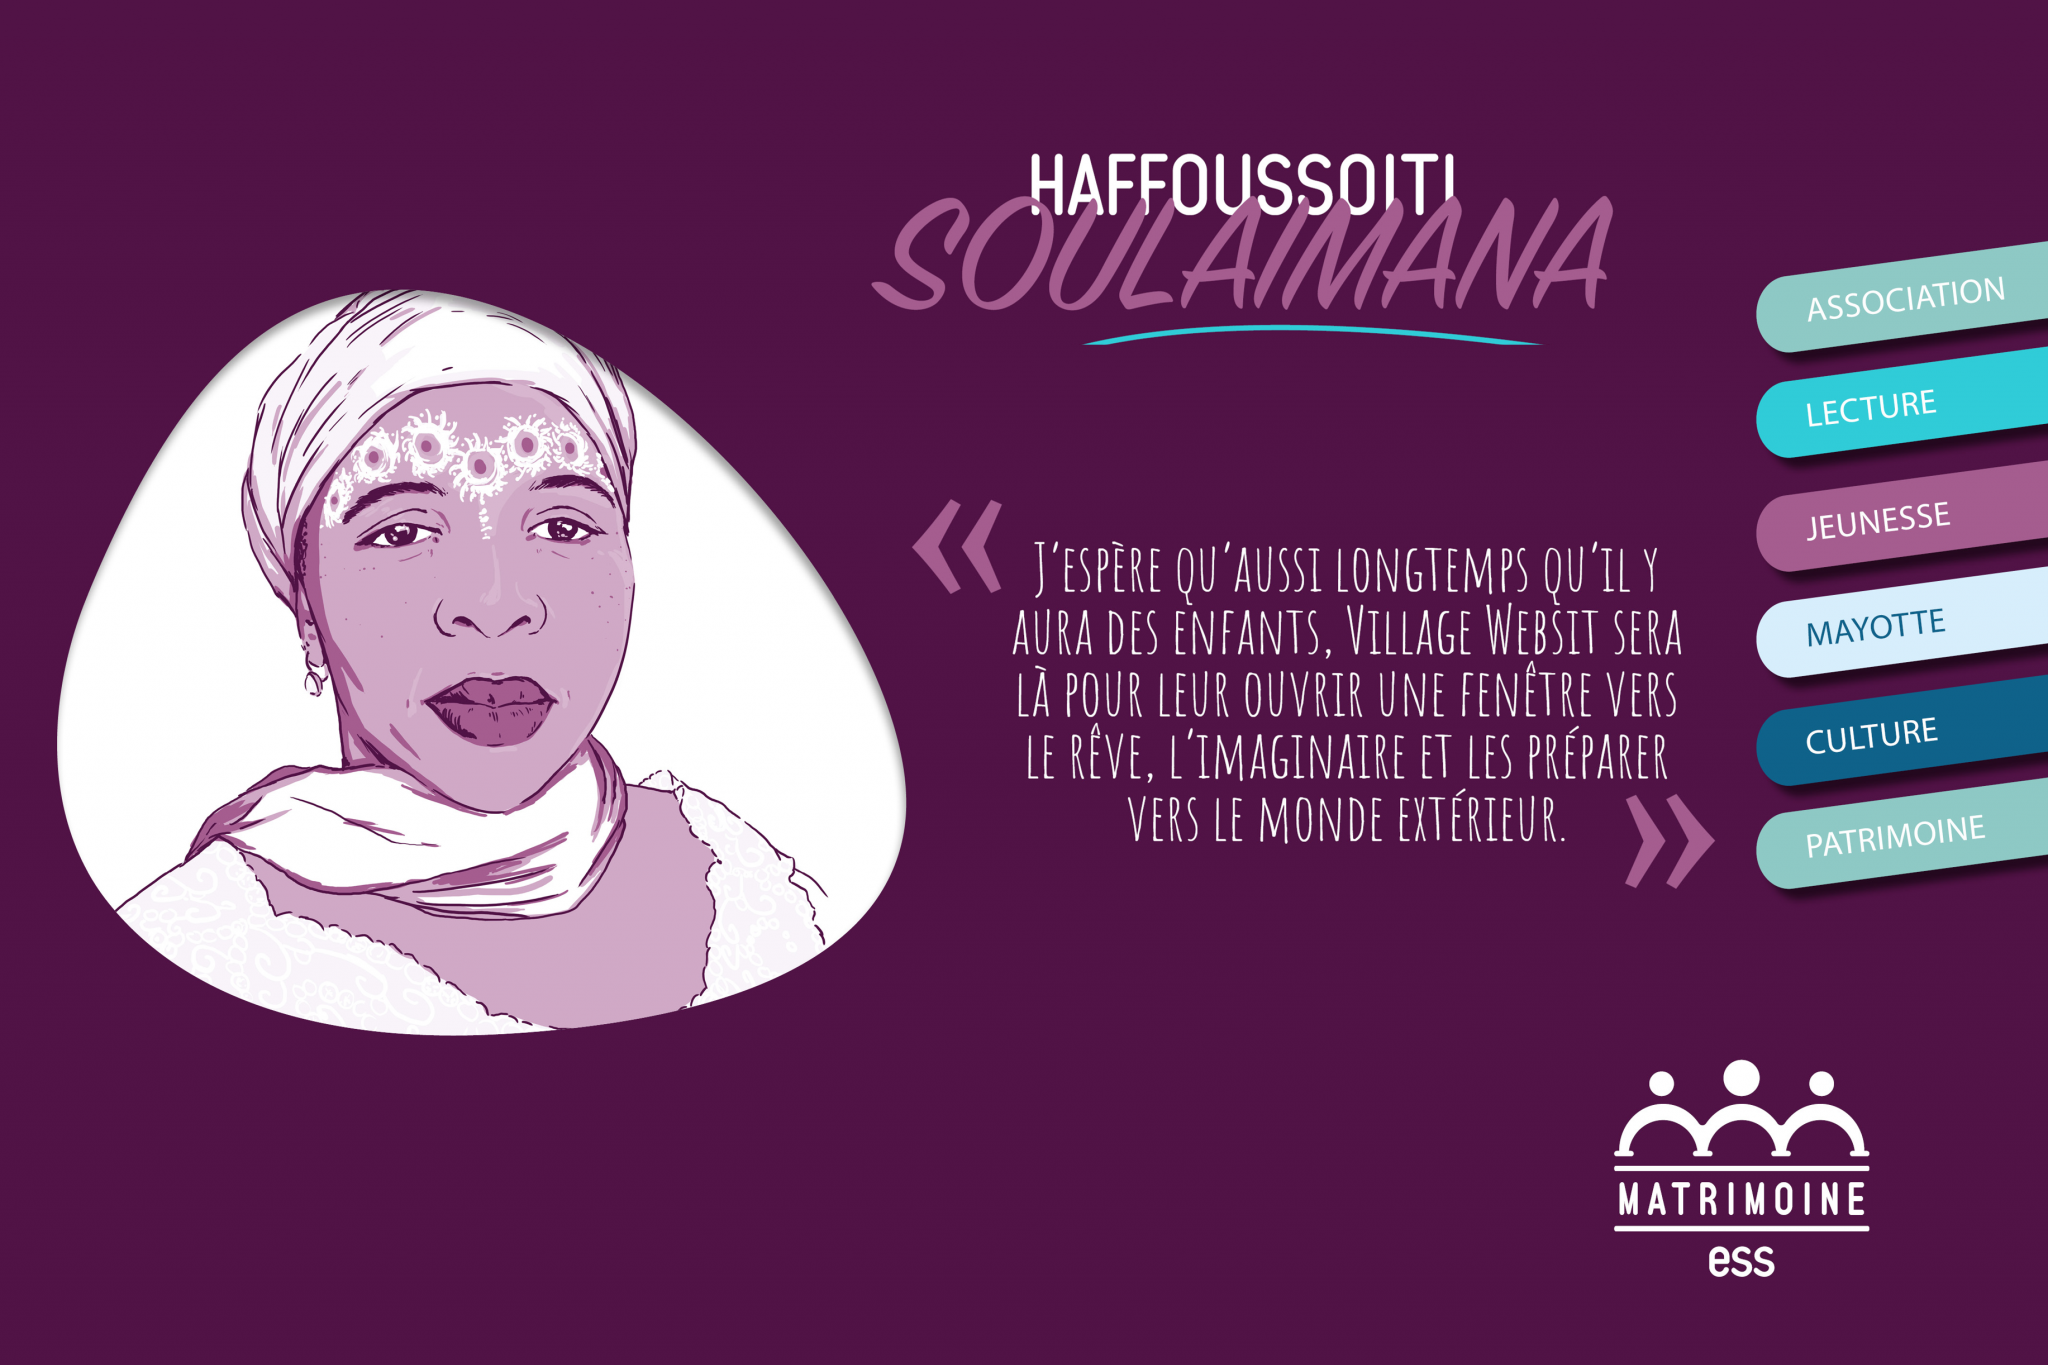 Portrait de Haffoussoiti Soulaimana, Présidente de l'association Village Websit